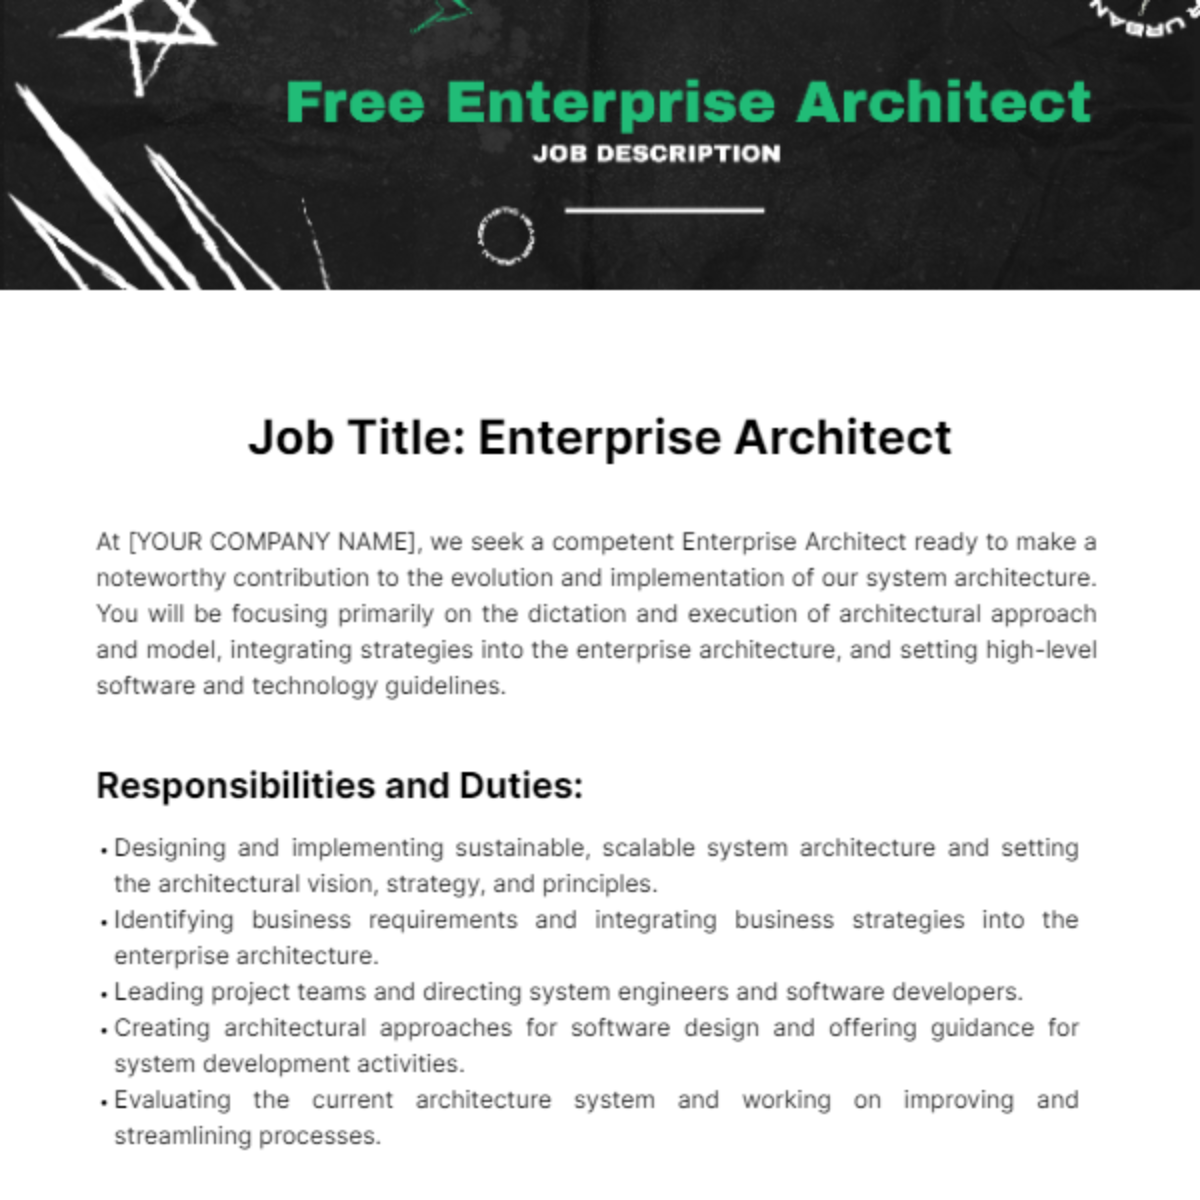 Free Enterprise Architect Job Description Template